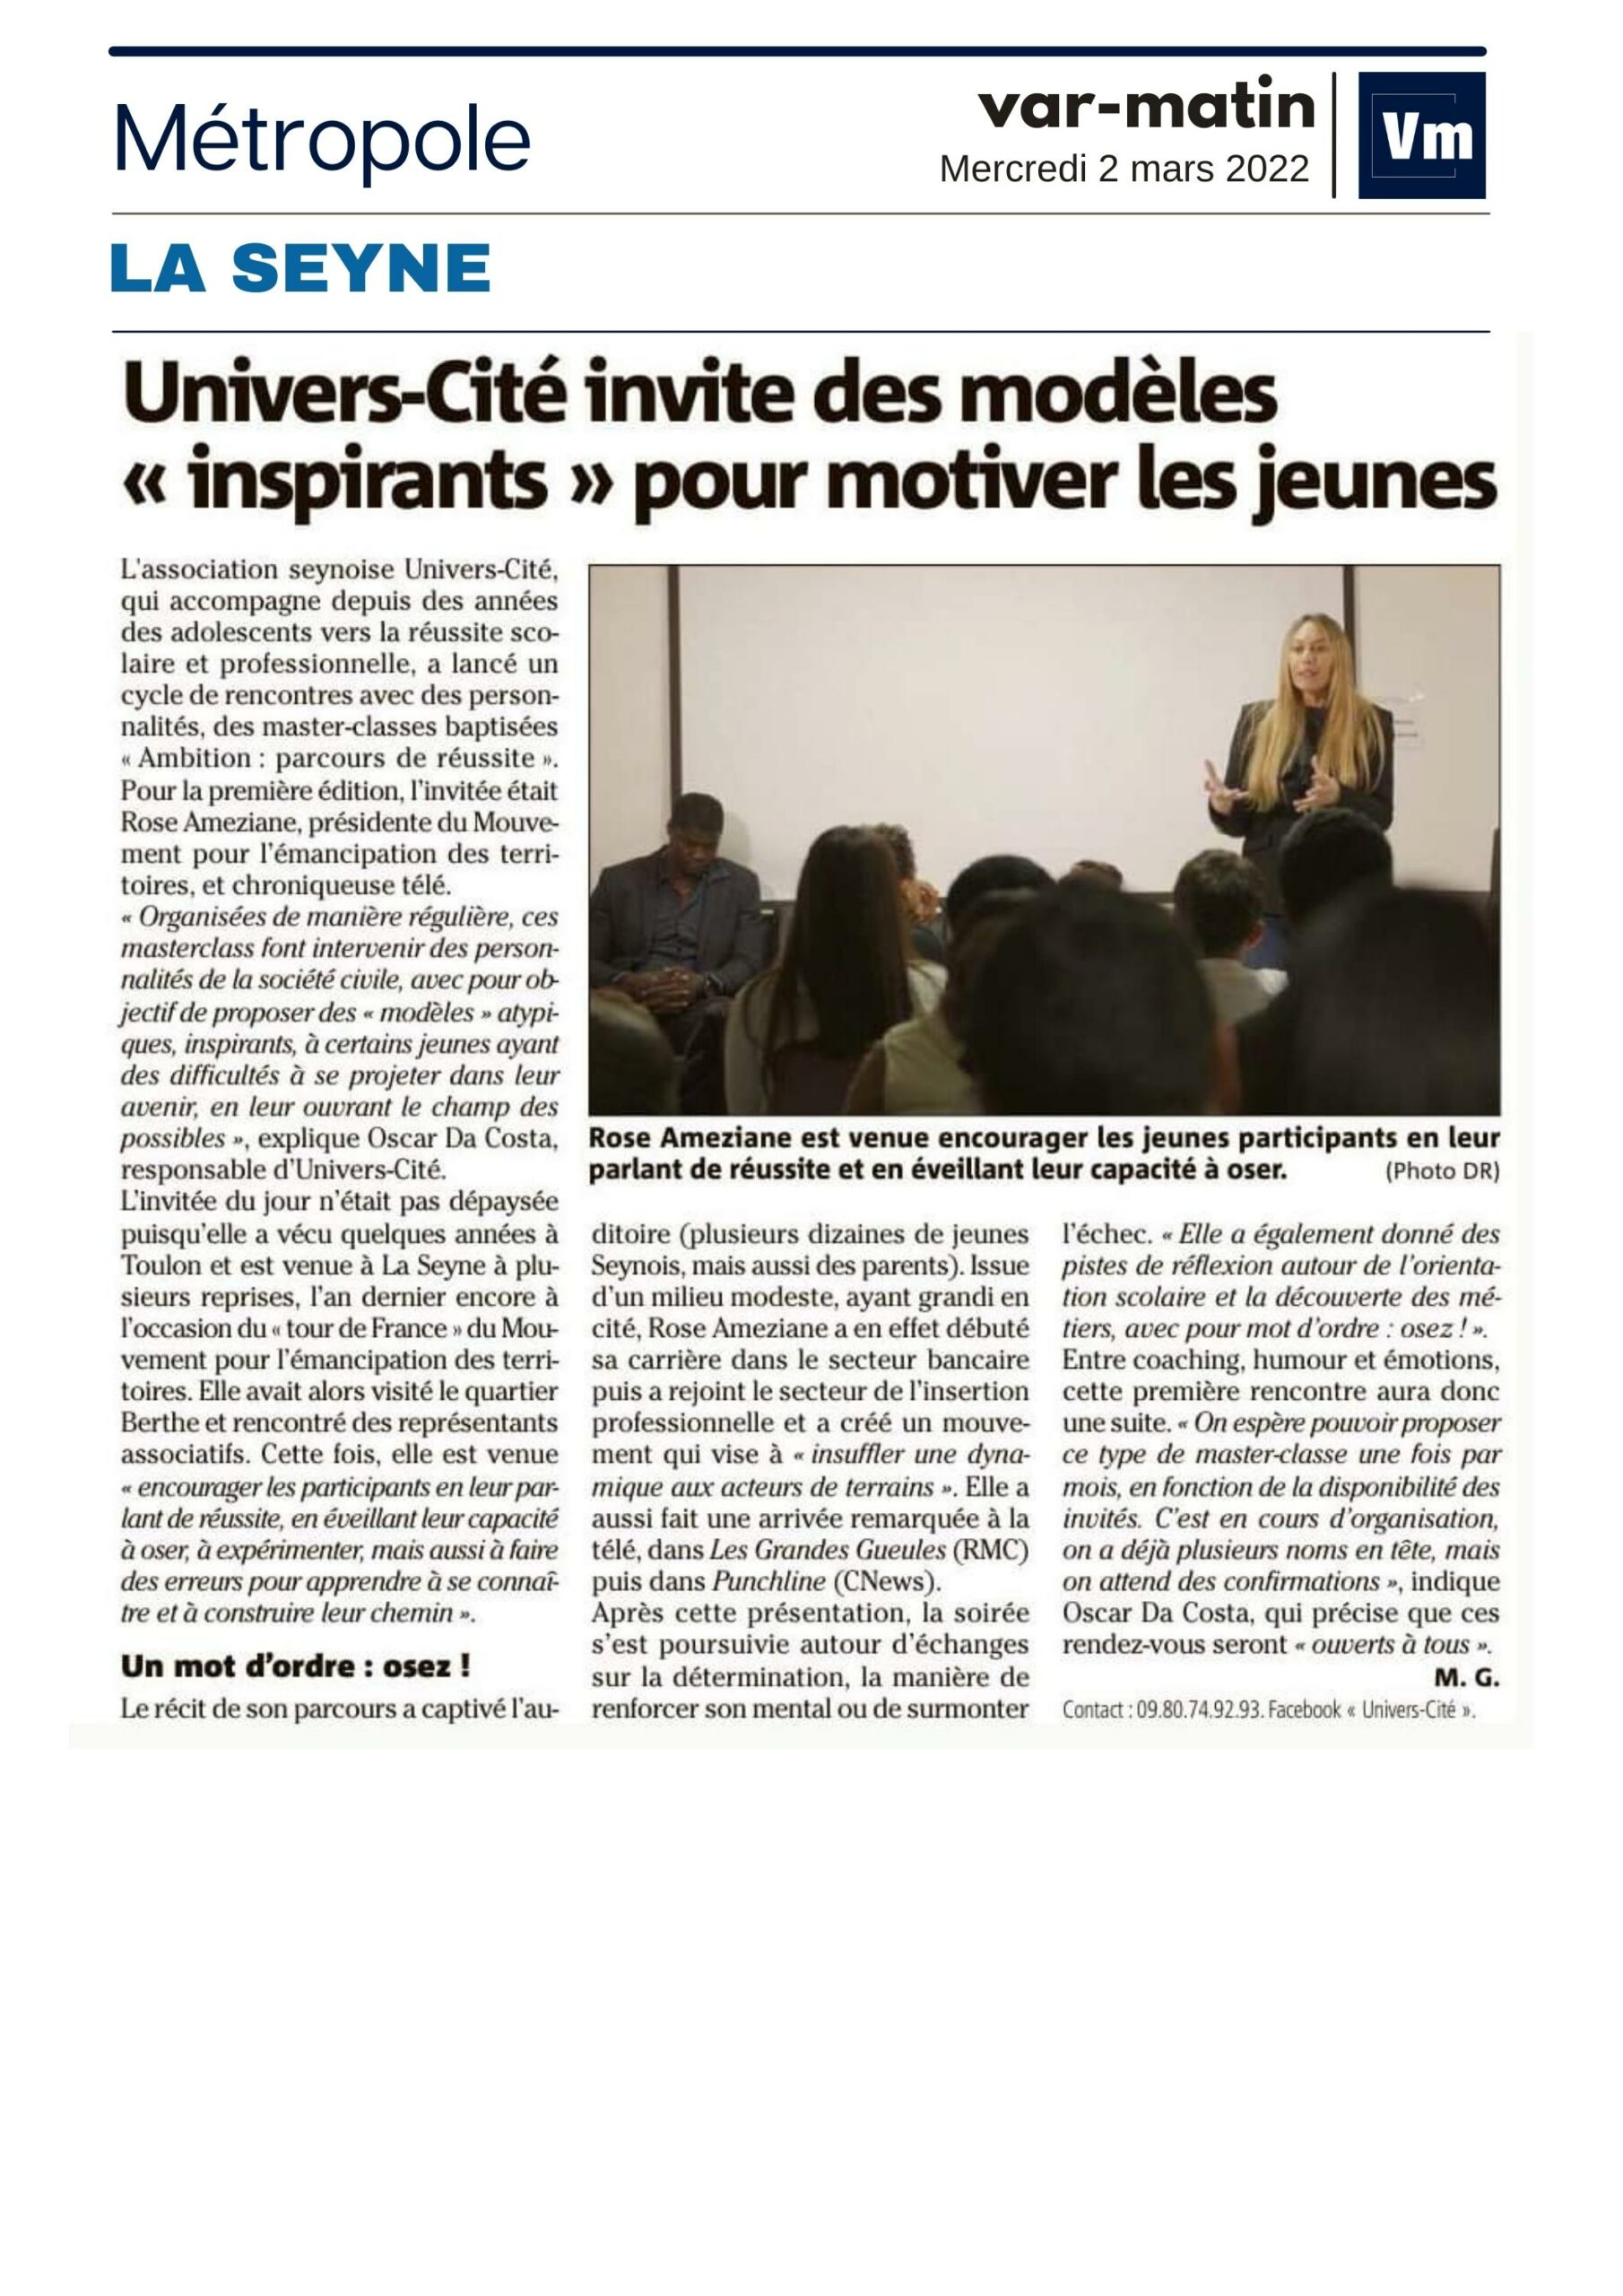 “Univers-Cité invite des modèles « inspirants » pour motiver les jeunes”